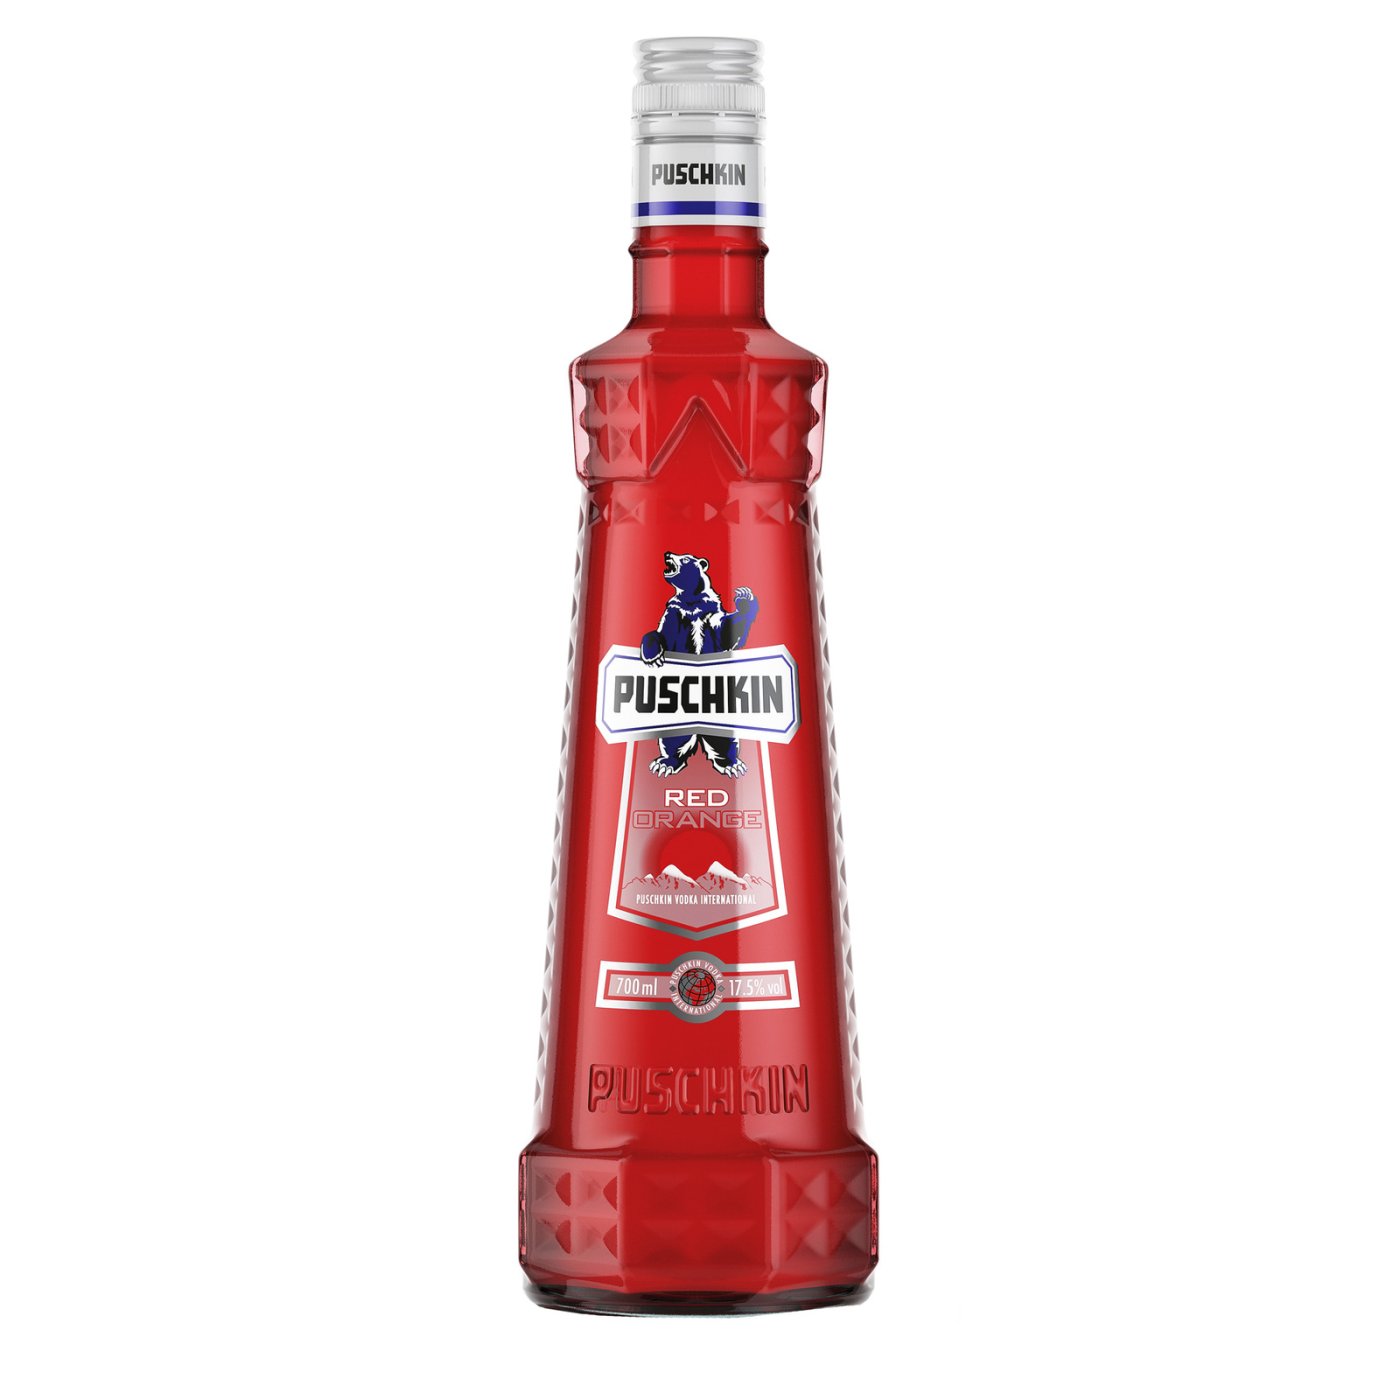 Puschkin - Red 1 liter